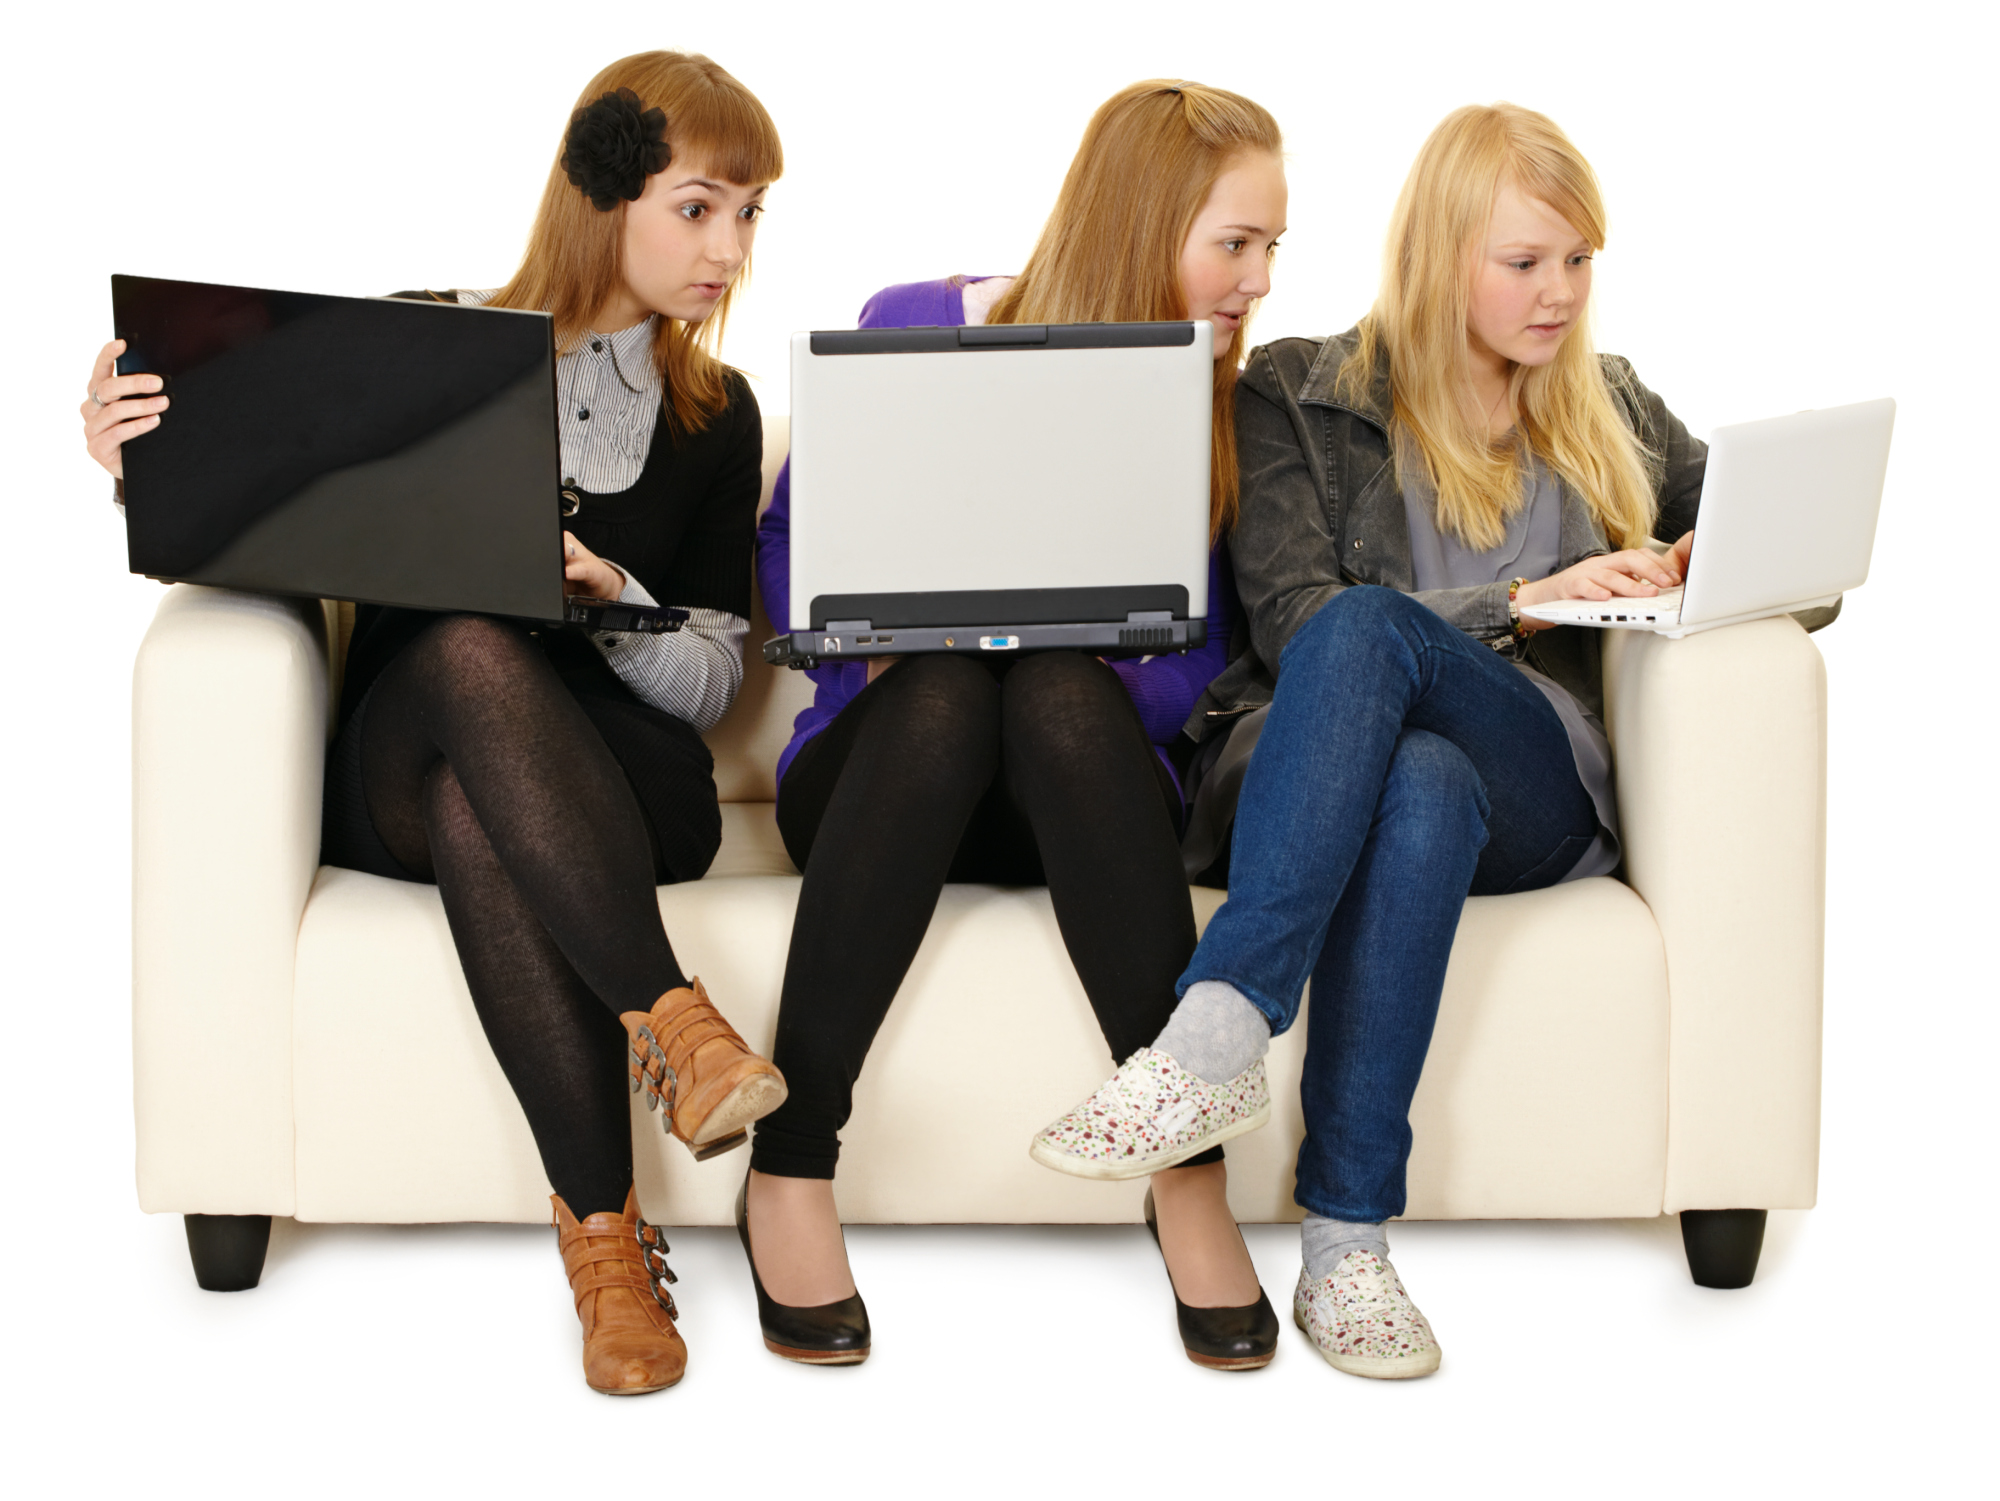 Найти подругу в интернете. Общение в социальных сетях. Девушка с ноутбуком. Много людей с ноутбуками. Люди переписываются в интернете.